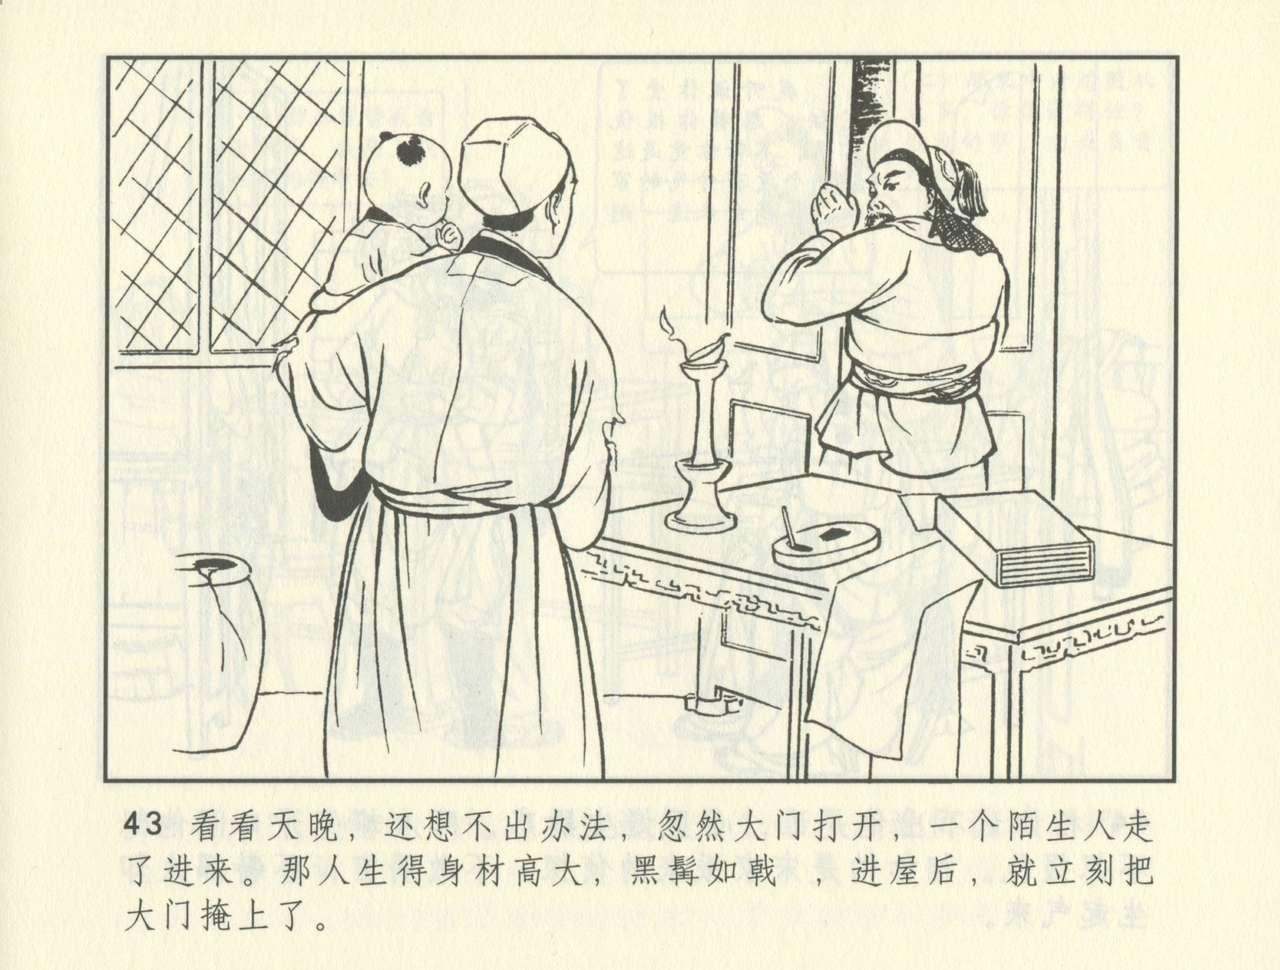 聊斋志异 张玮等绘 天津人民美术出版社 卷二十一 ~ 三十 383